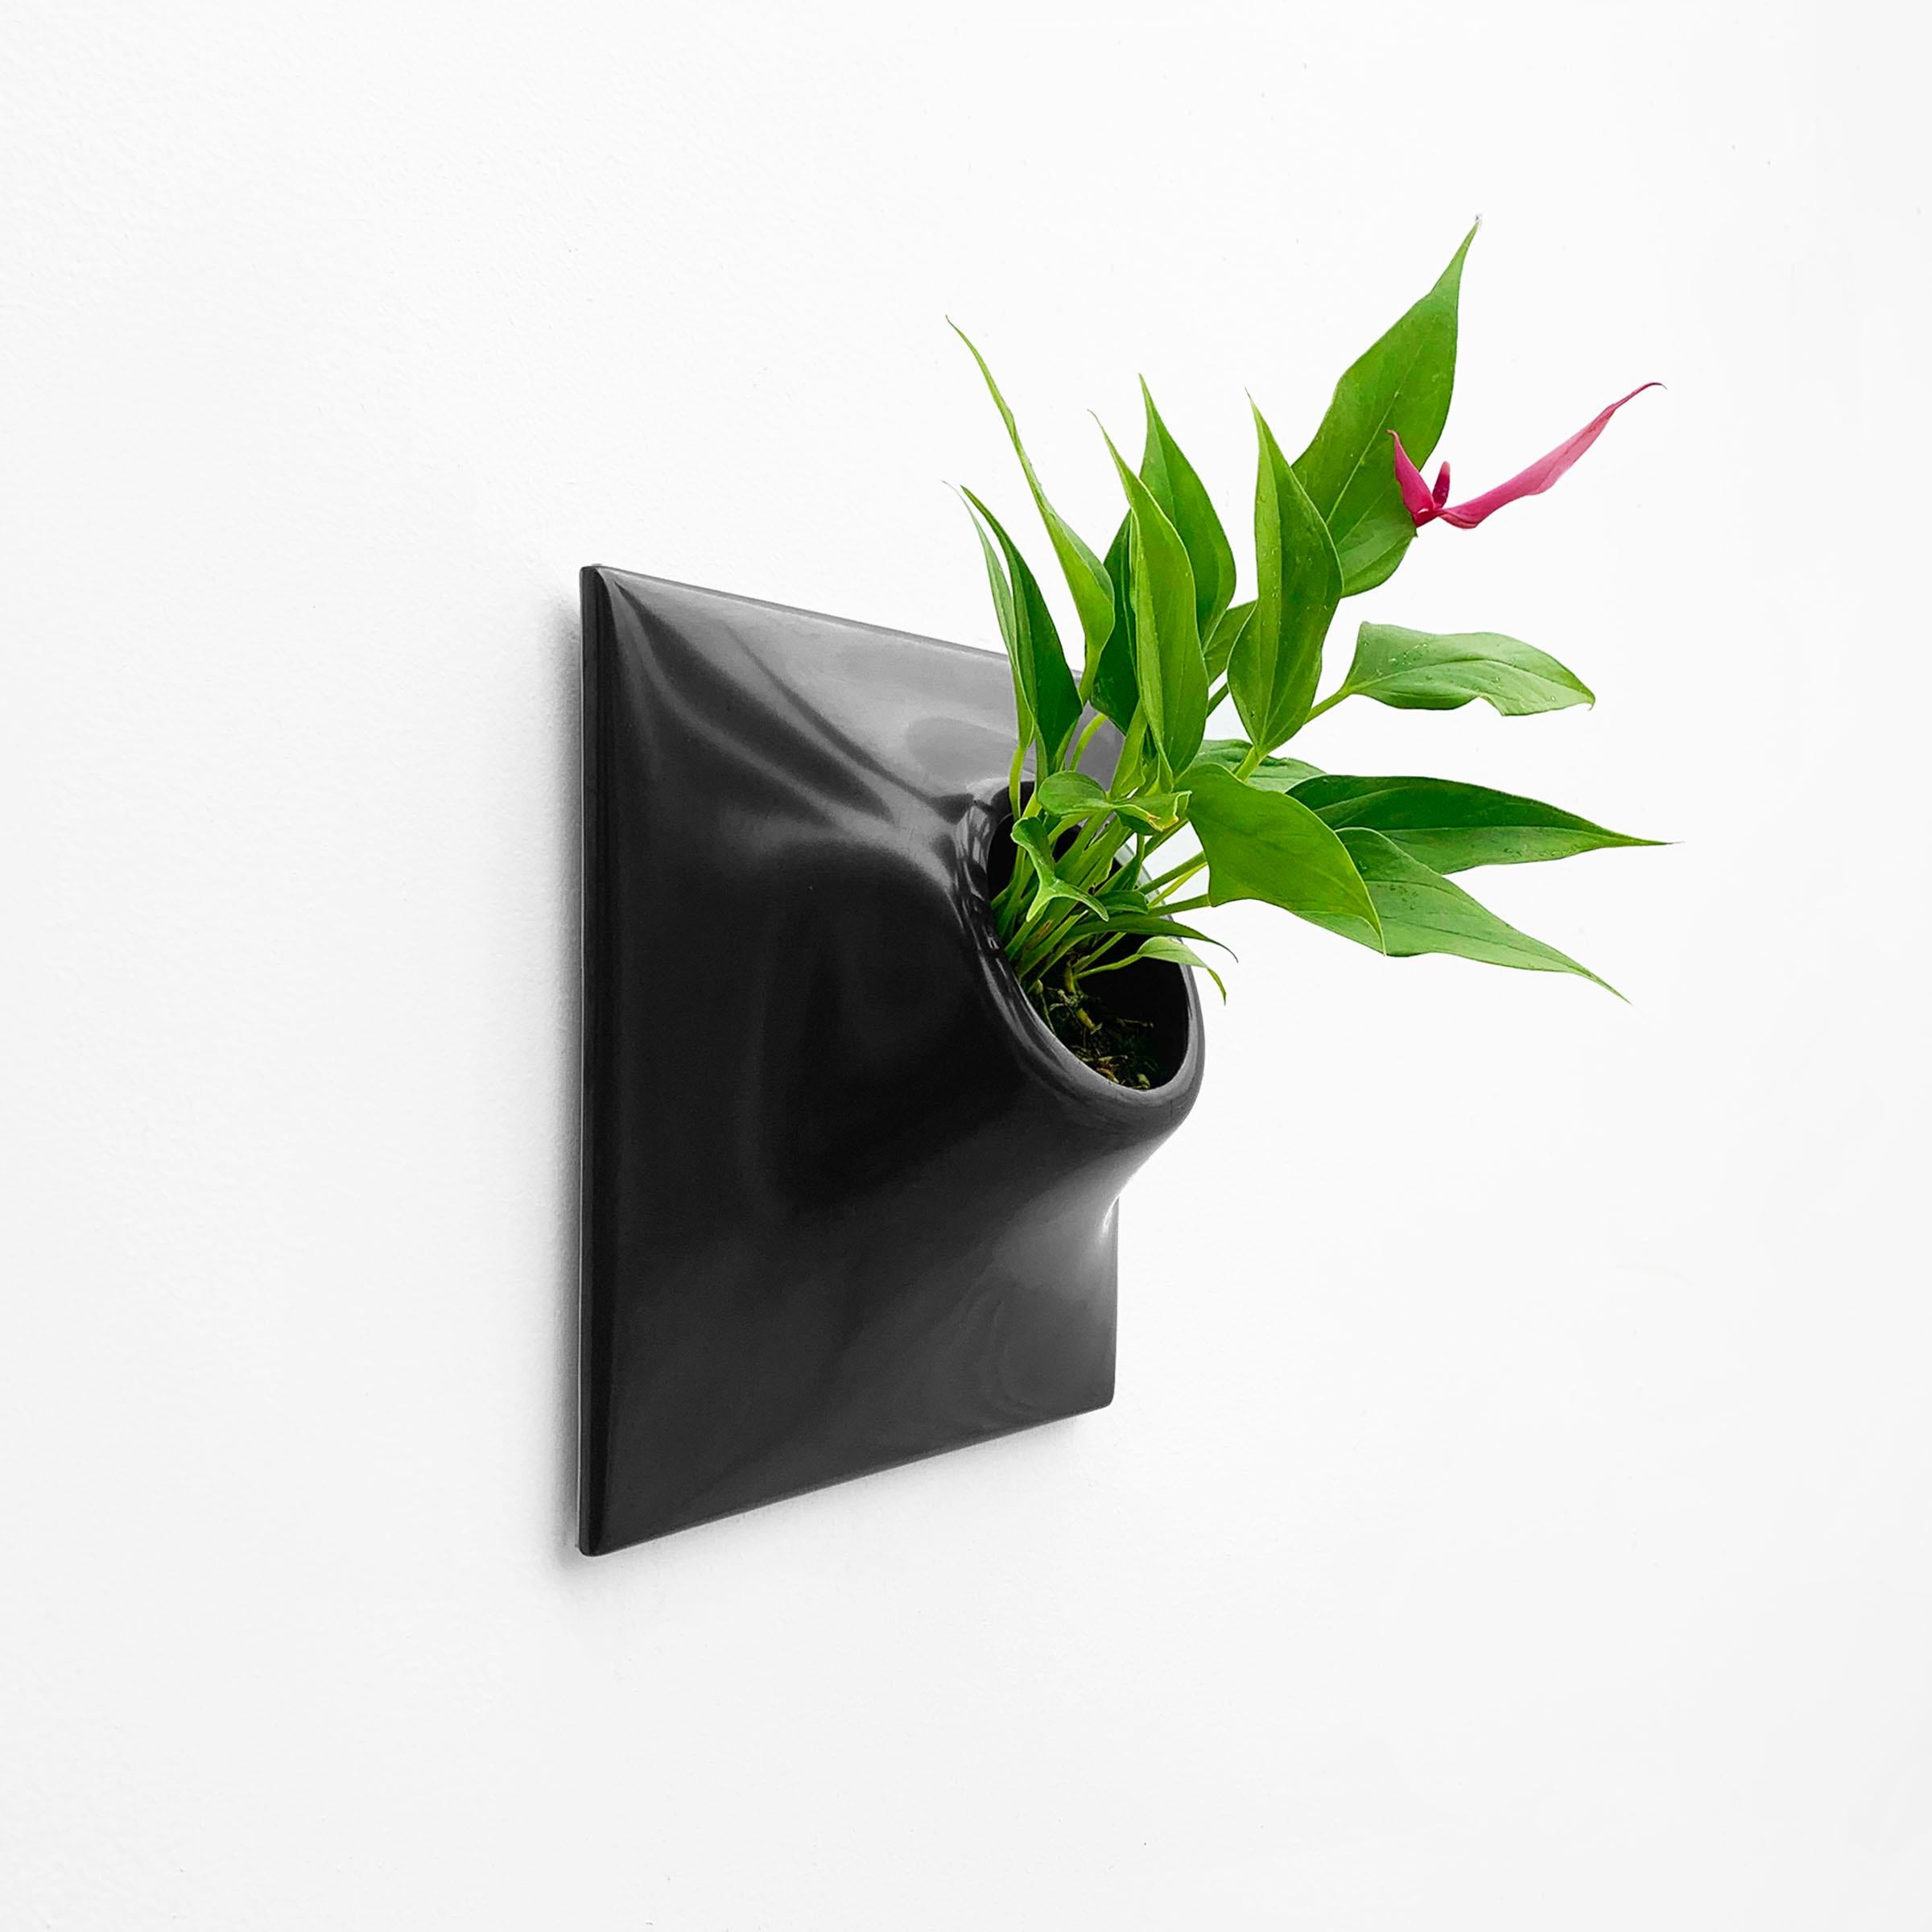 Glazed Modern Black Wall Planter, Plant Wall, Living Wall Sculpture, Node 9